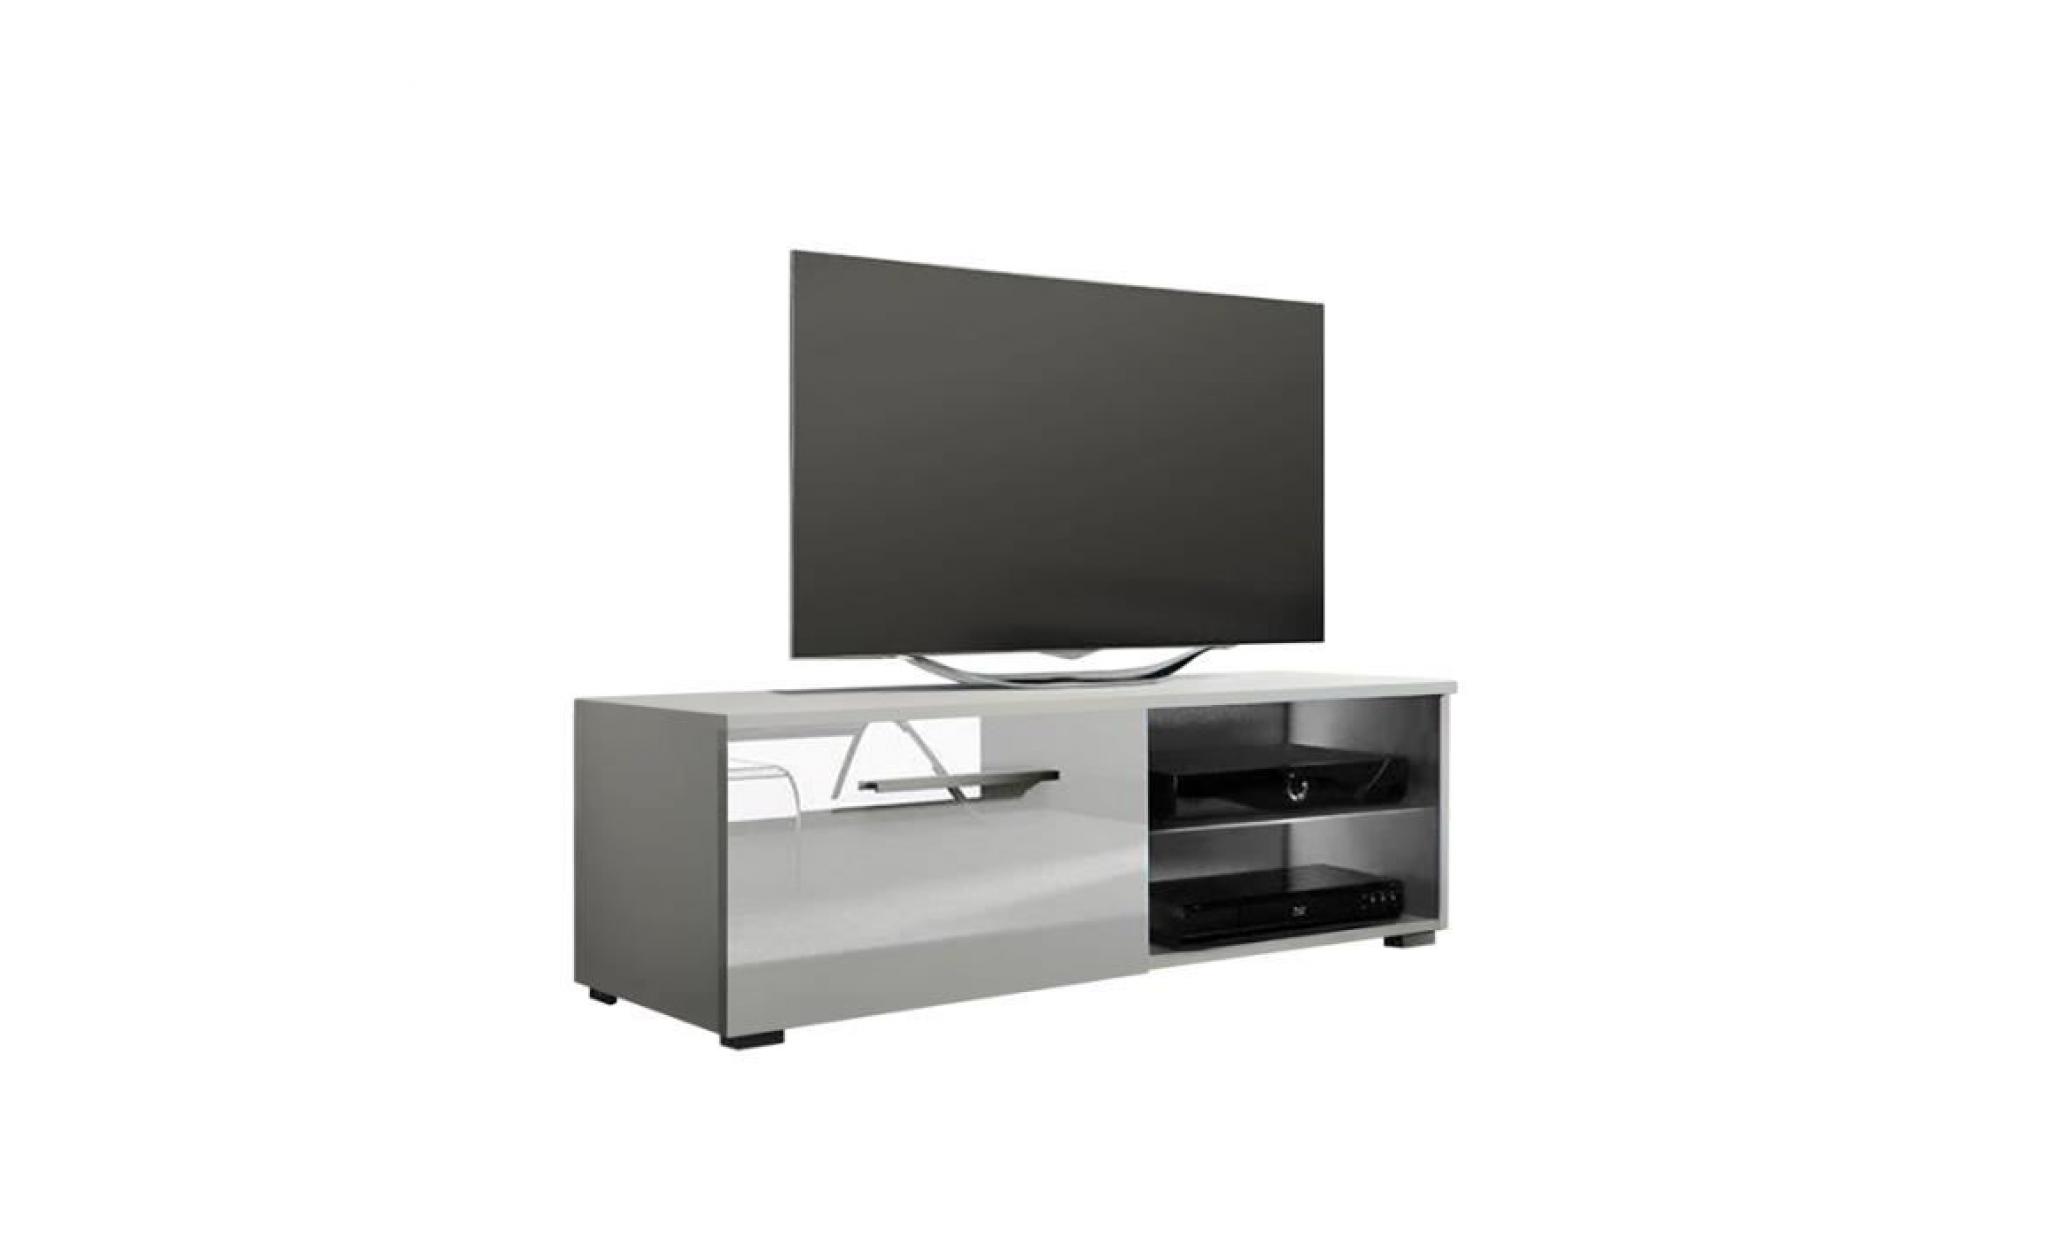 meuble tv / meuble salon   tenus single   100 cm   blanc mat / blanc brillant   avec led   2 compartiments ouverts   style classique pas cher